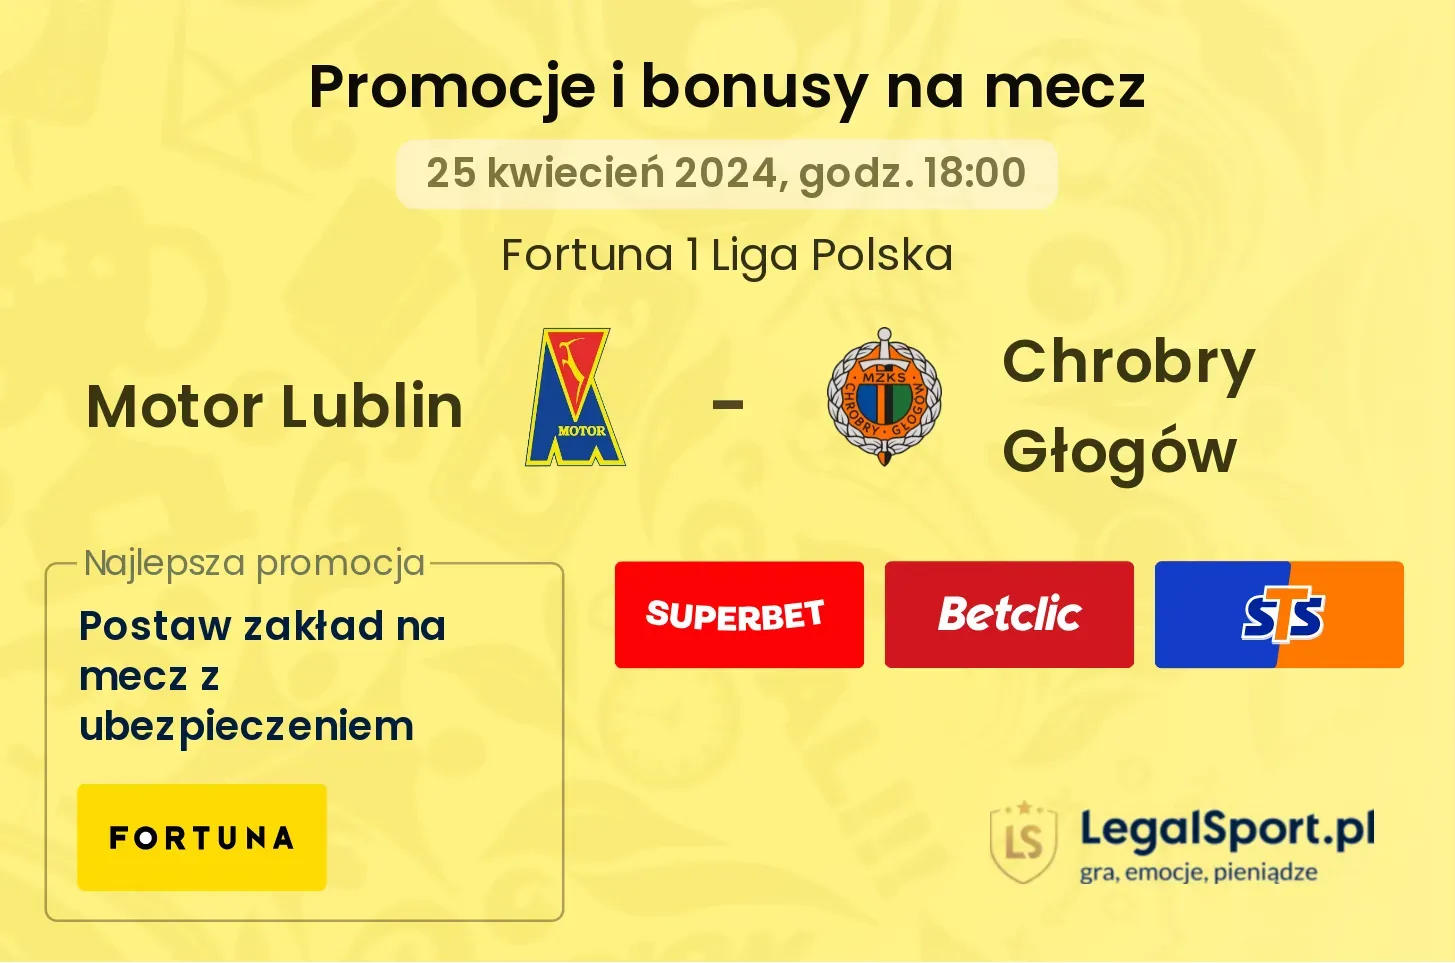 Motor Lublin - Chrobry Głogów promocje bonusy na mecz